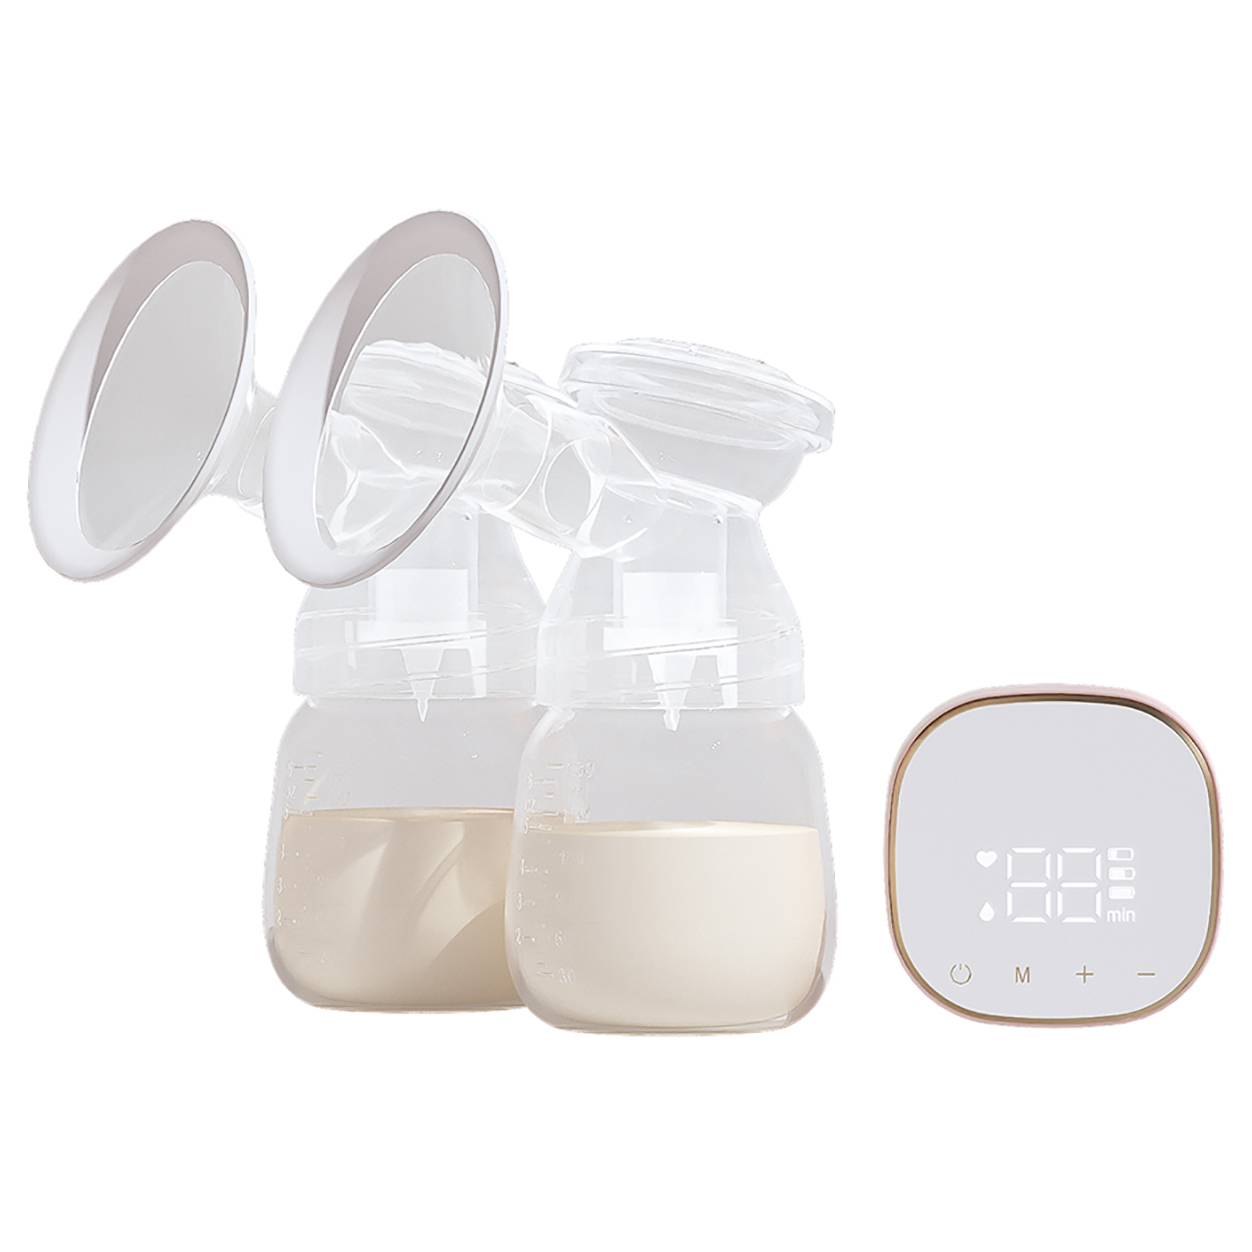 Elektromos hordozható tejet tápláló mellszívó gép Kiemelt kép